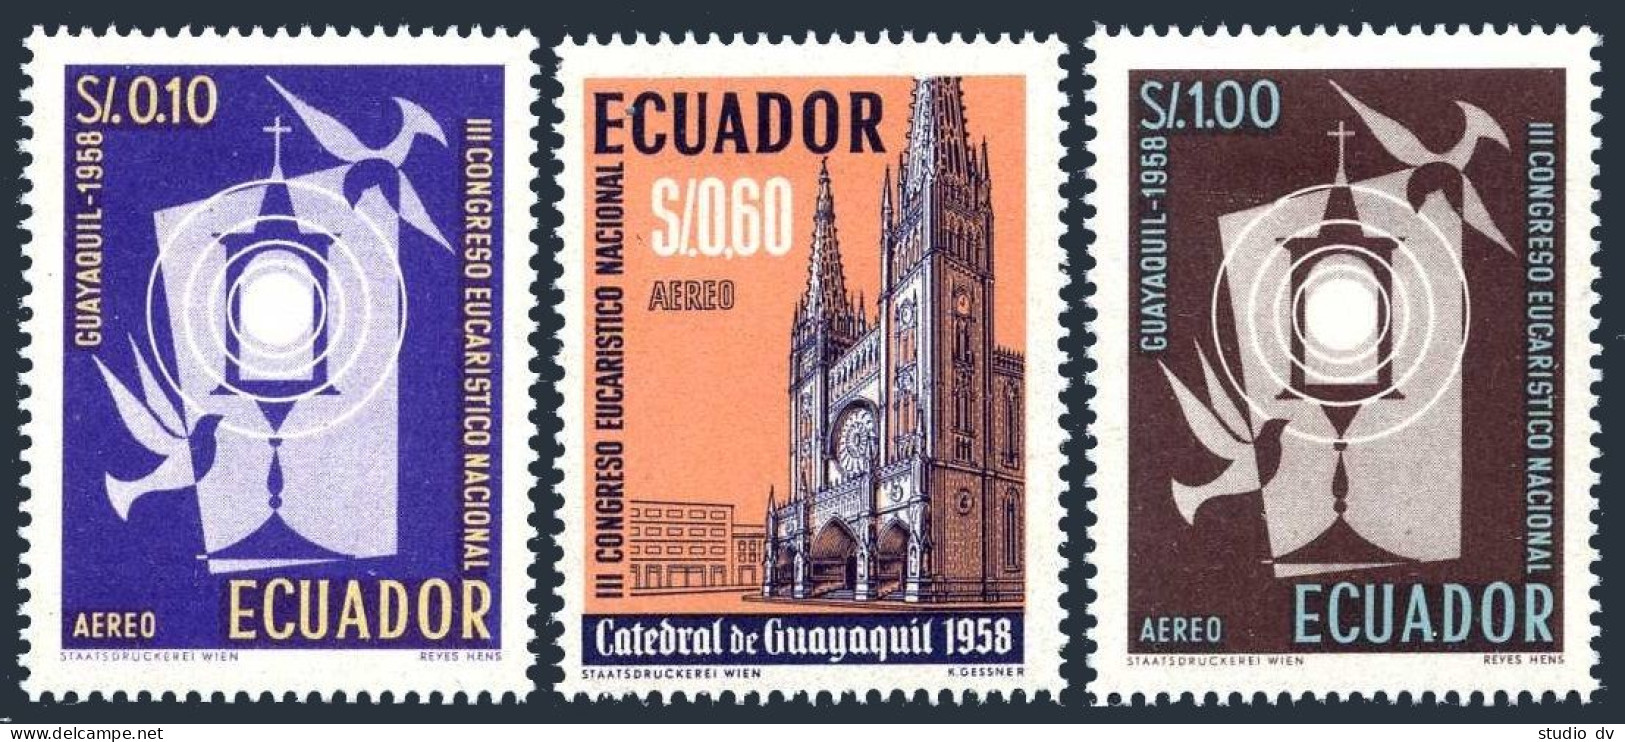 Ecuador C327-C329, Hinged. Michel 974-976. National Eucharist Congress, 1958. - Ecuador